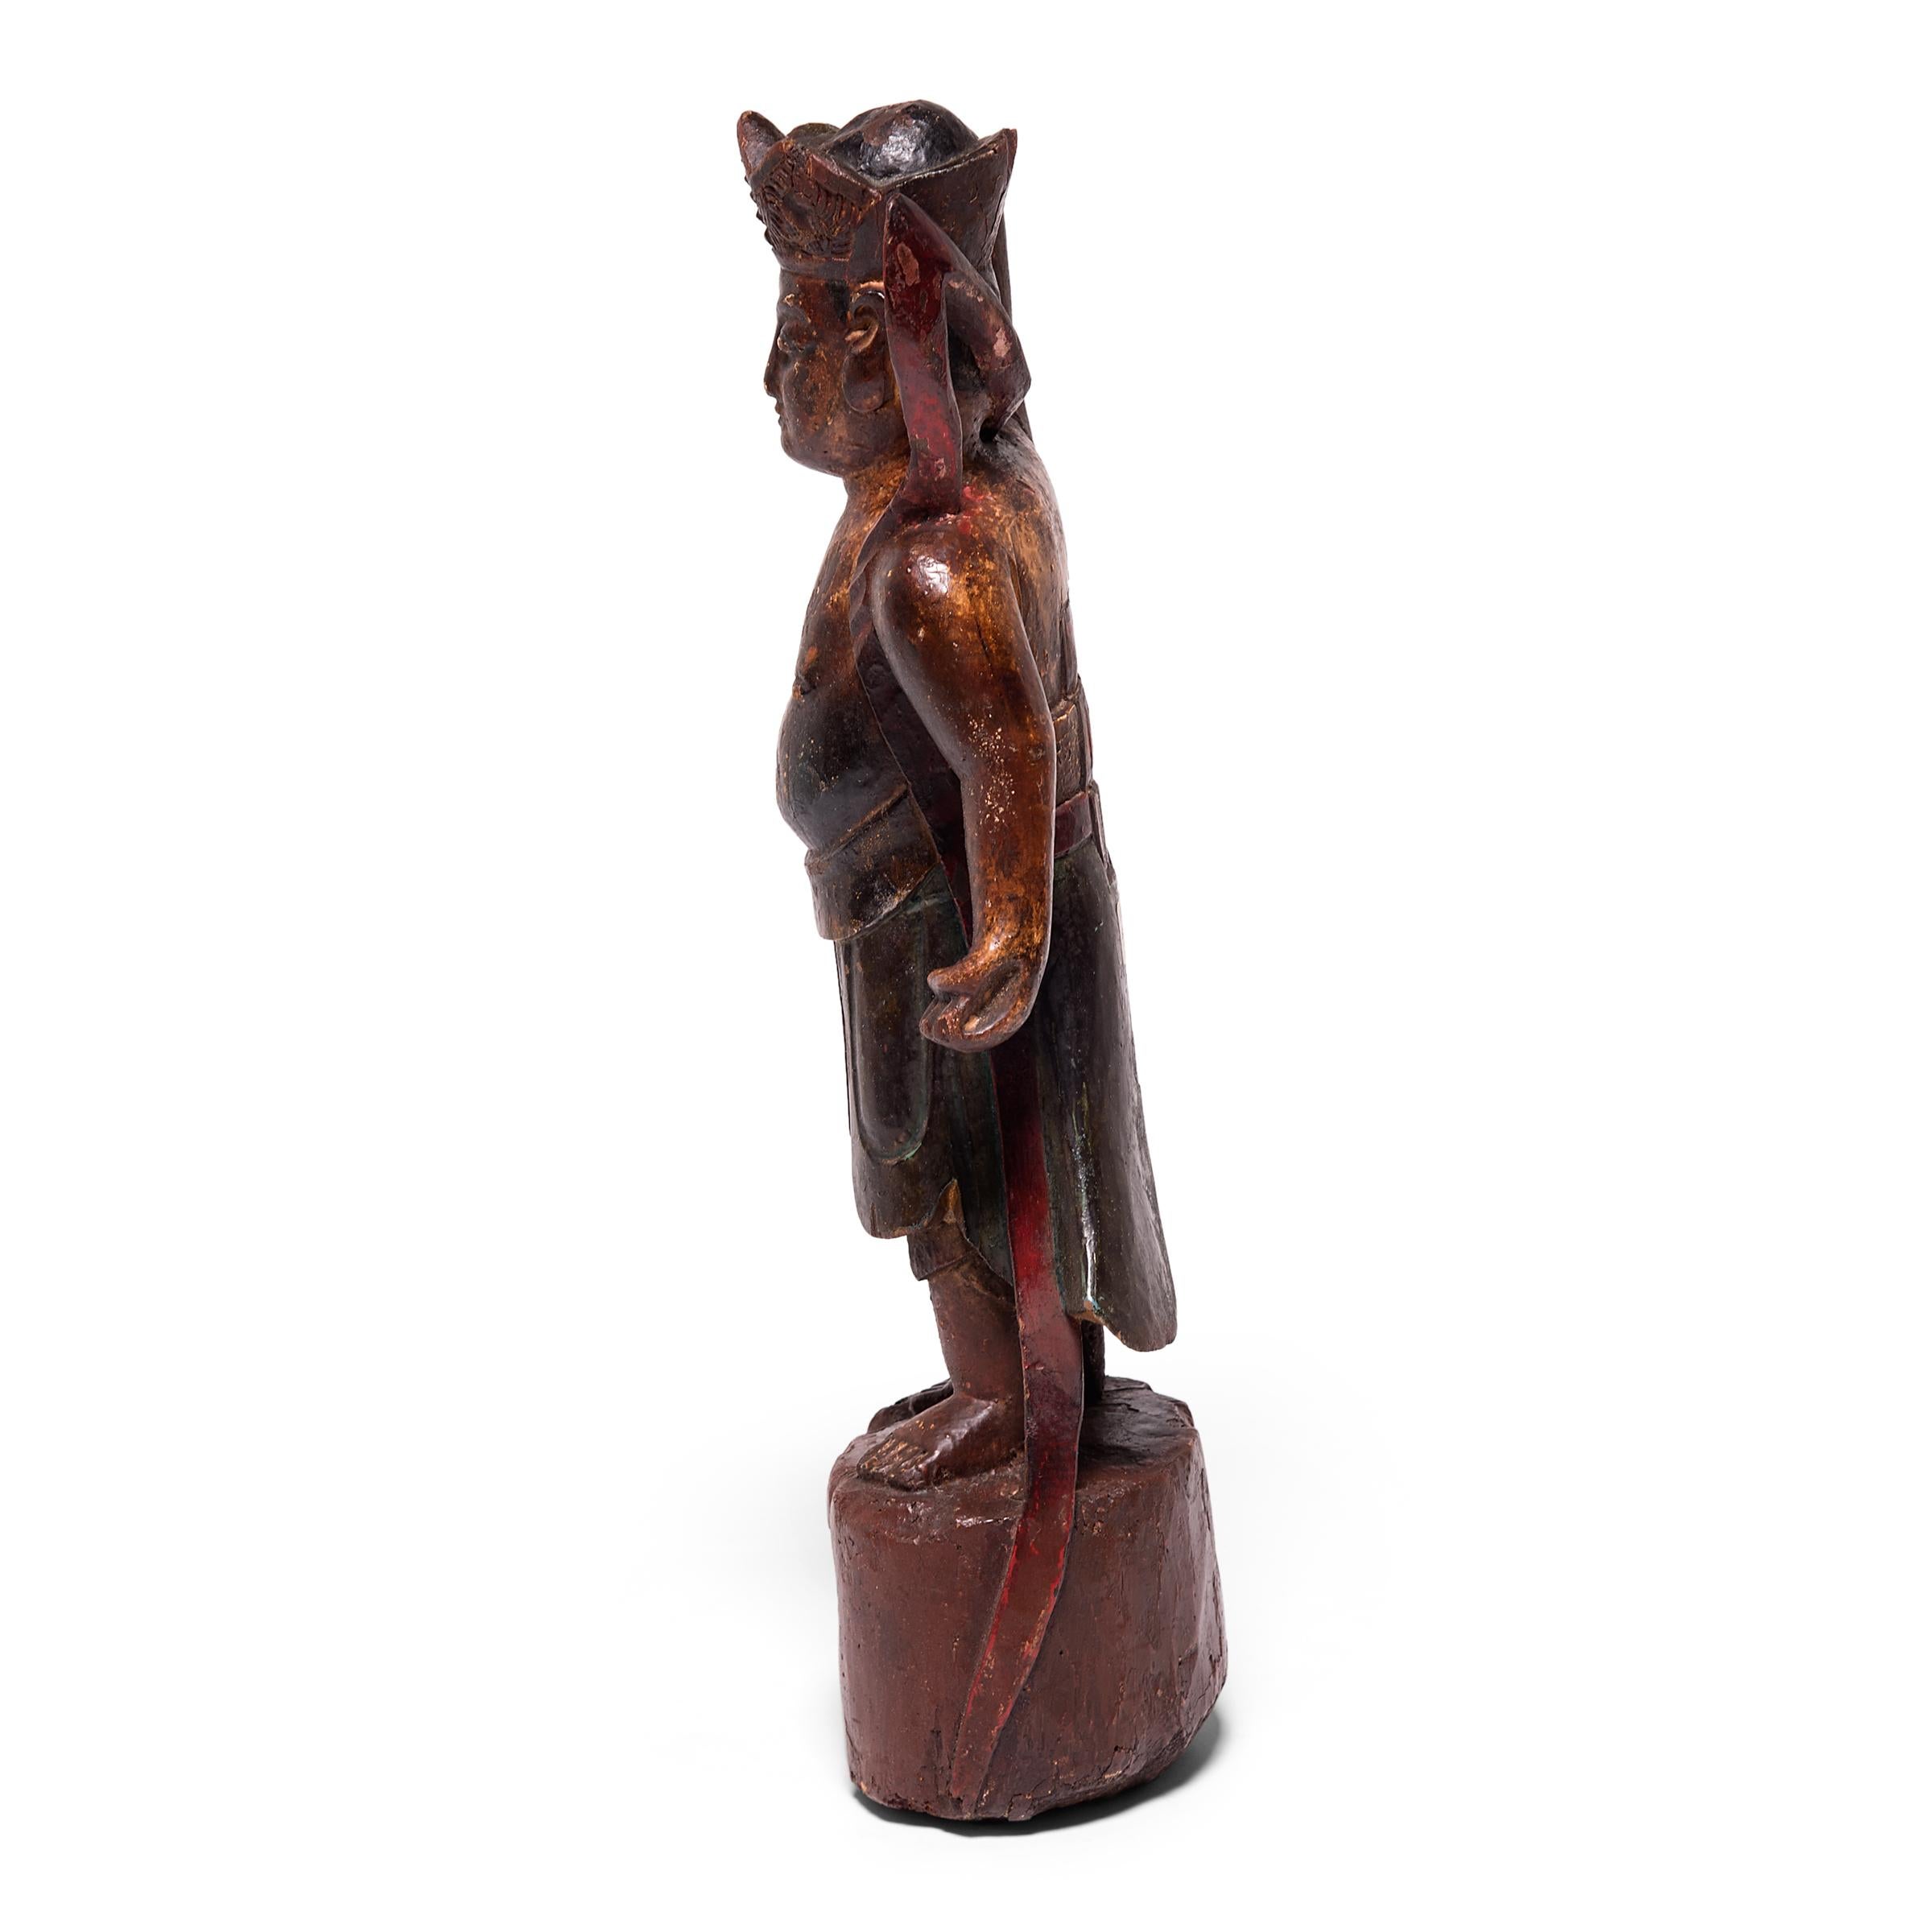 Diese von Hand geschnitzte und lebhaft bemalte Figur eines mythischen Geistes aus dem 19. Jahrhundert wurde einst auf einem traditionellen Altartisch aufgestellt, um den Ahnen der Vergangenheit Tribut zu zollen. Die Figur ist mit detaillierten